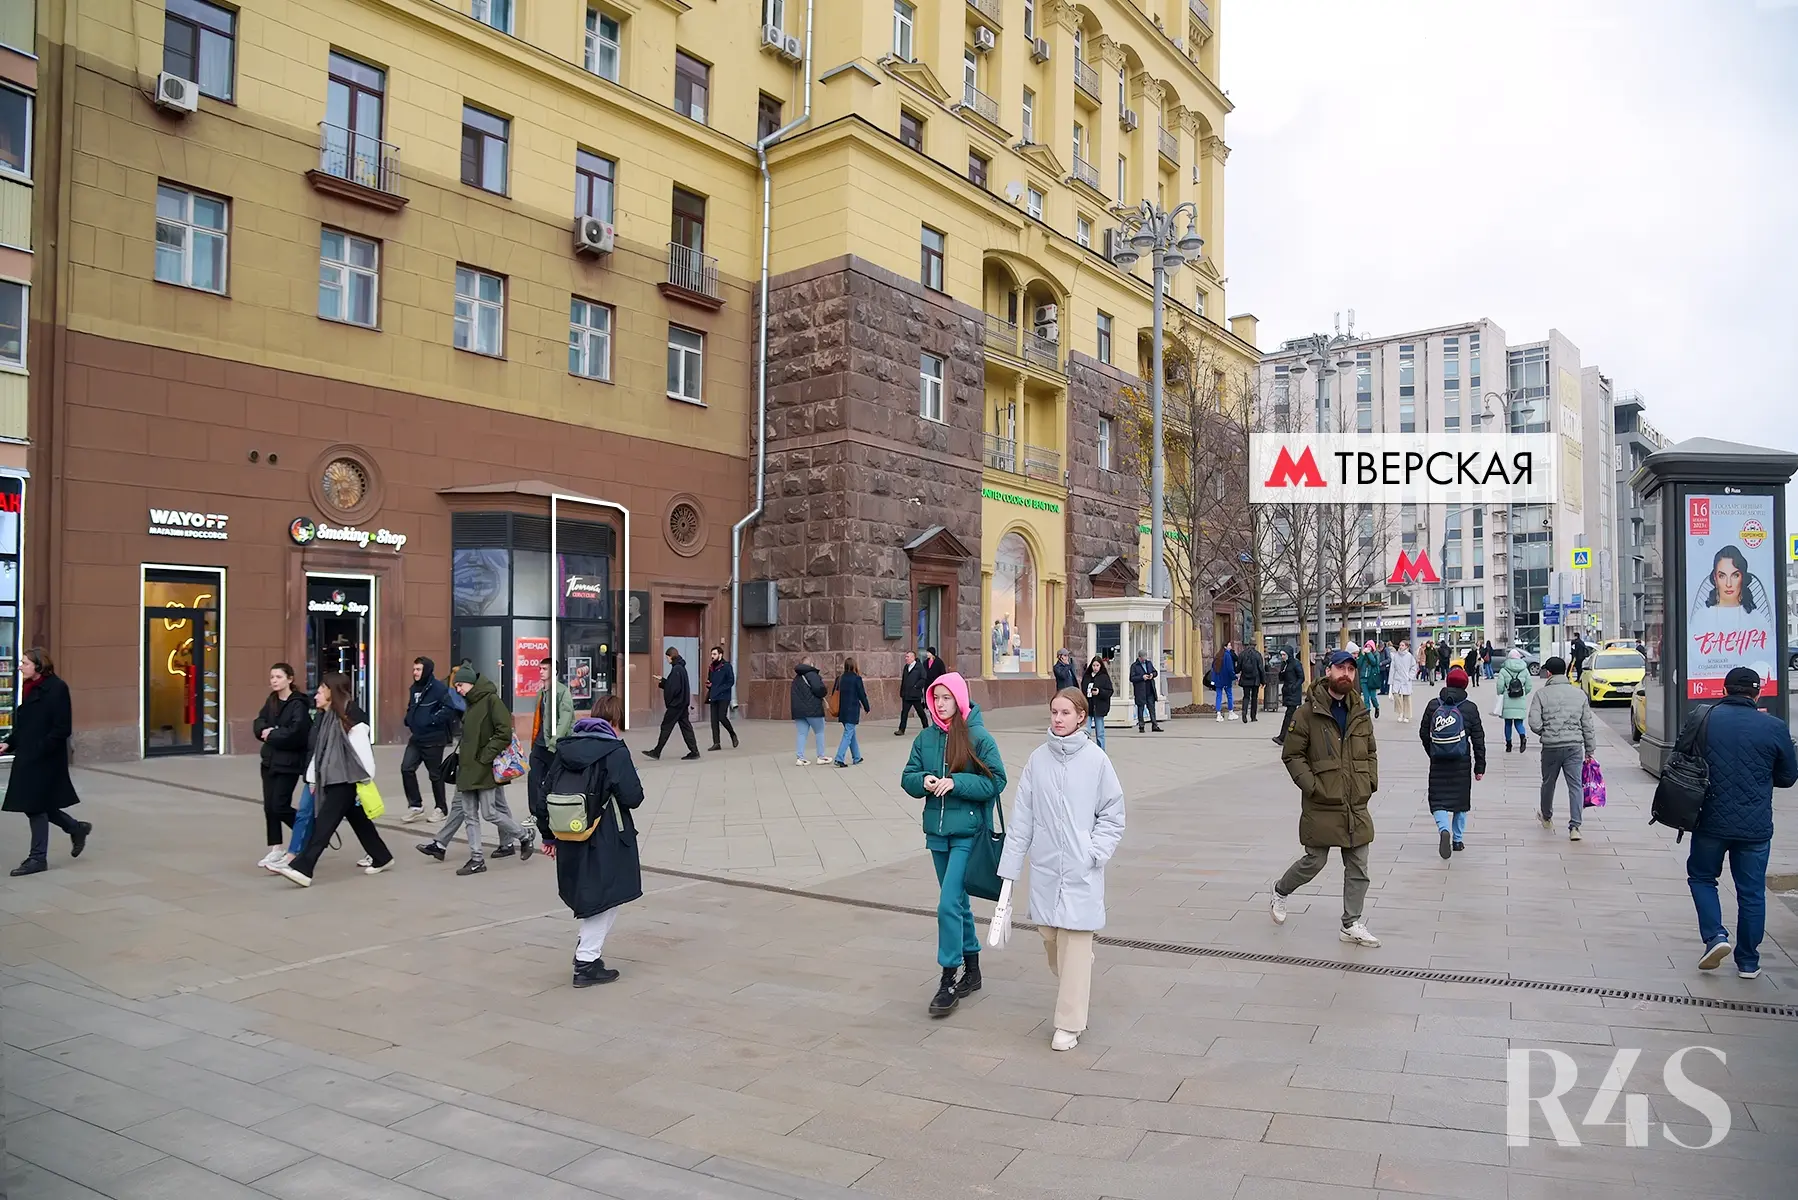 Аренда торгового помещения площадью 14.2 м2 в Москве: Тверская, 19 R4S | Realty4Sale